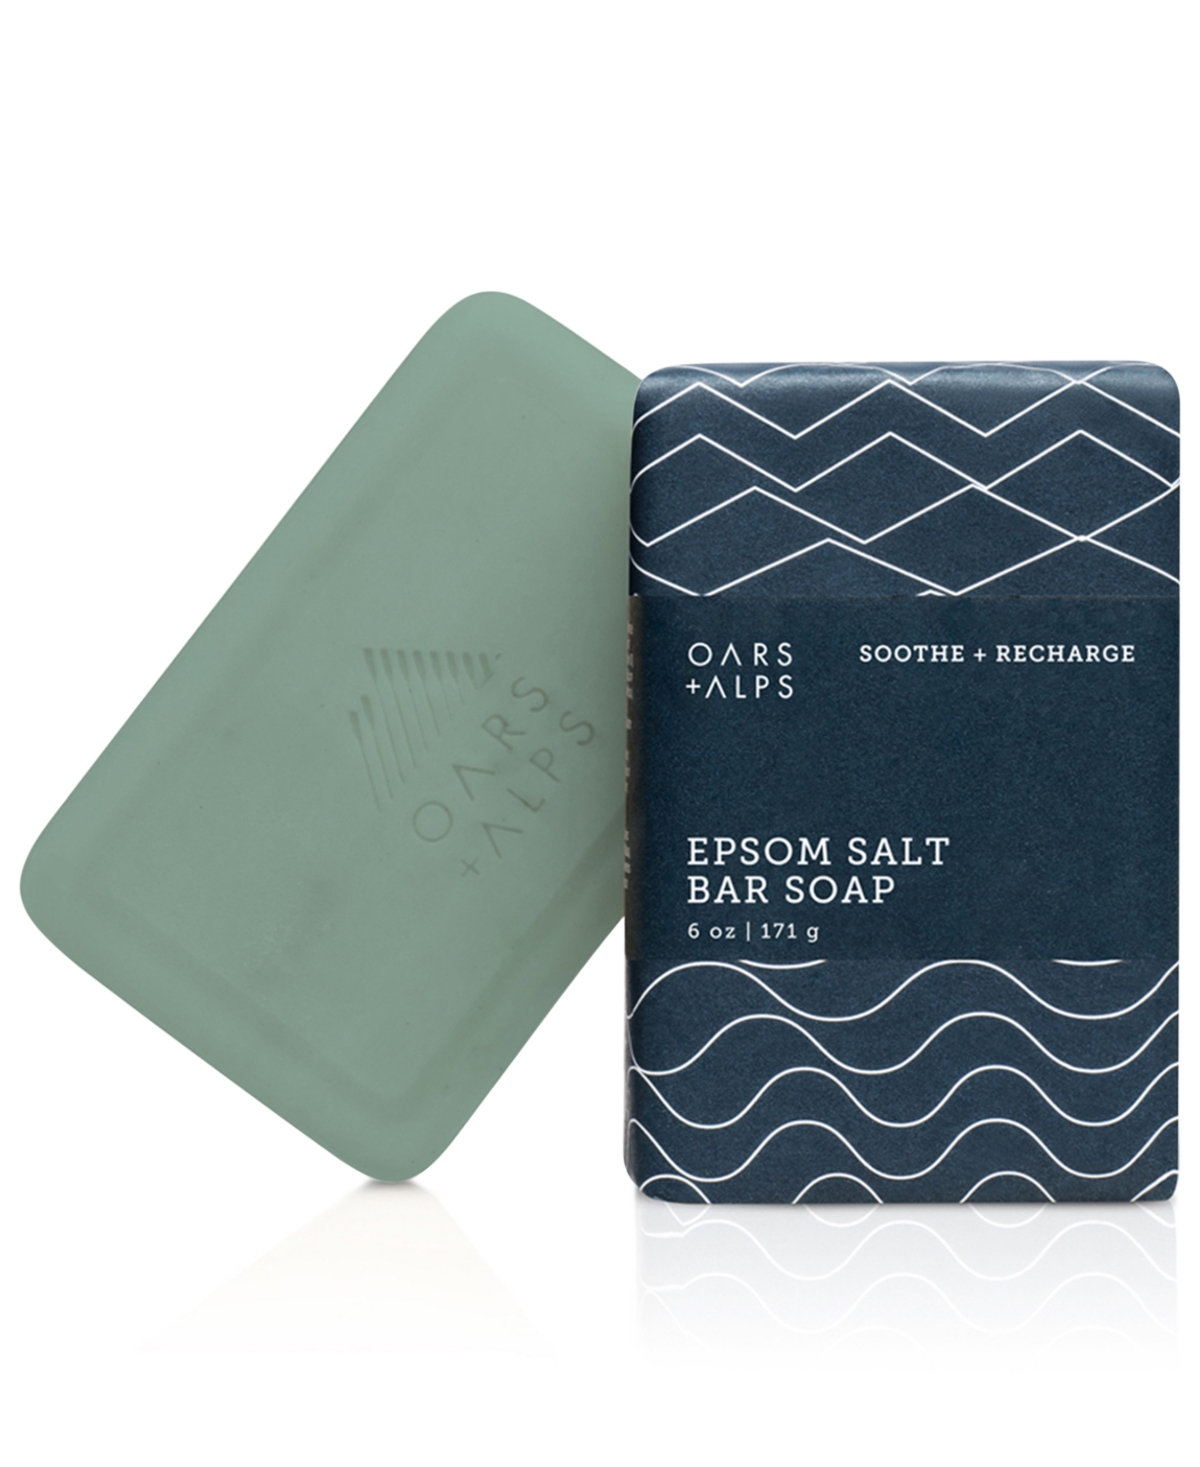 Oars + Alps Epsom Salt Bar Soap, 6 Oz.